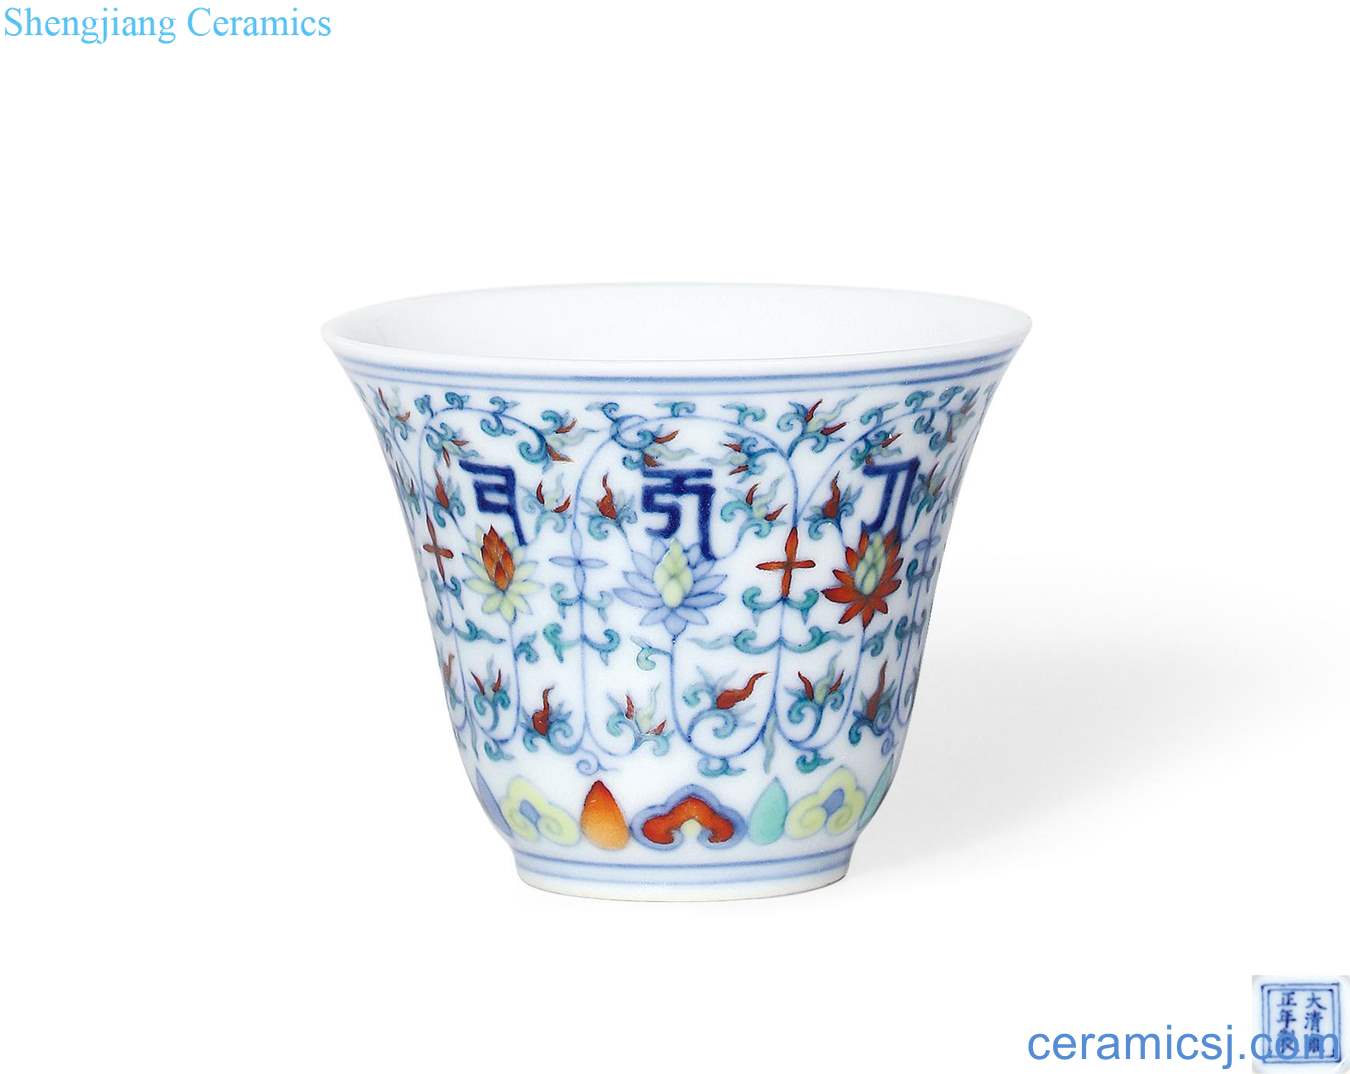 Qing yongzheng dou colors branch lotus Sanskrit cup